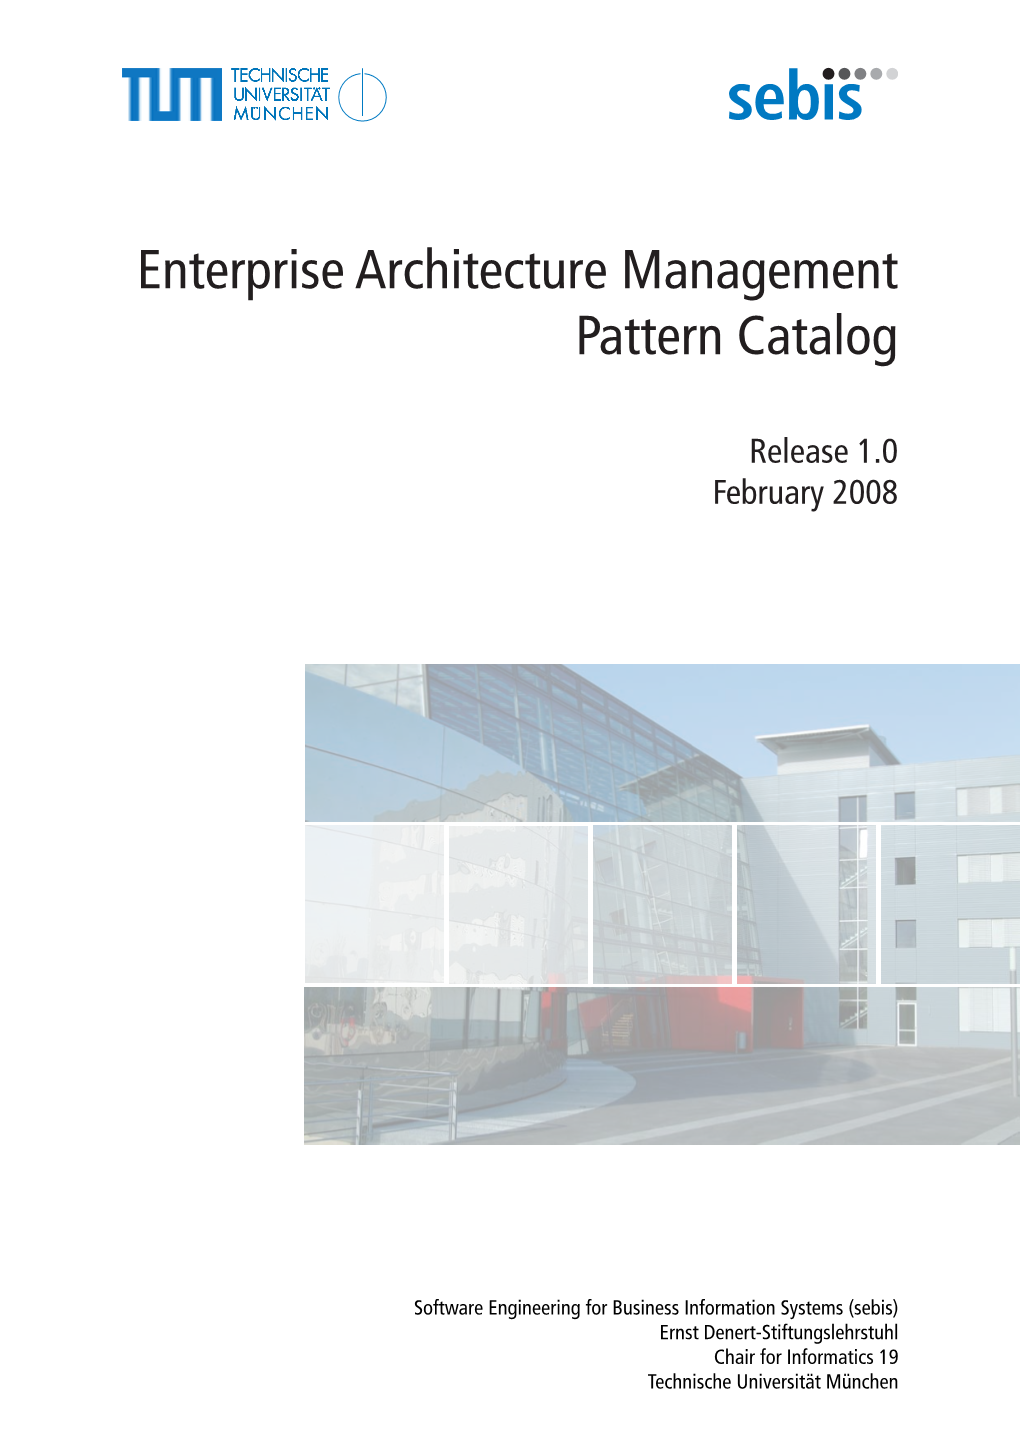 Enterprise Architecture Management Pattern Catalog